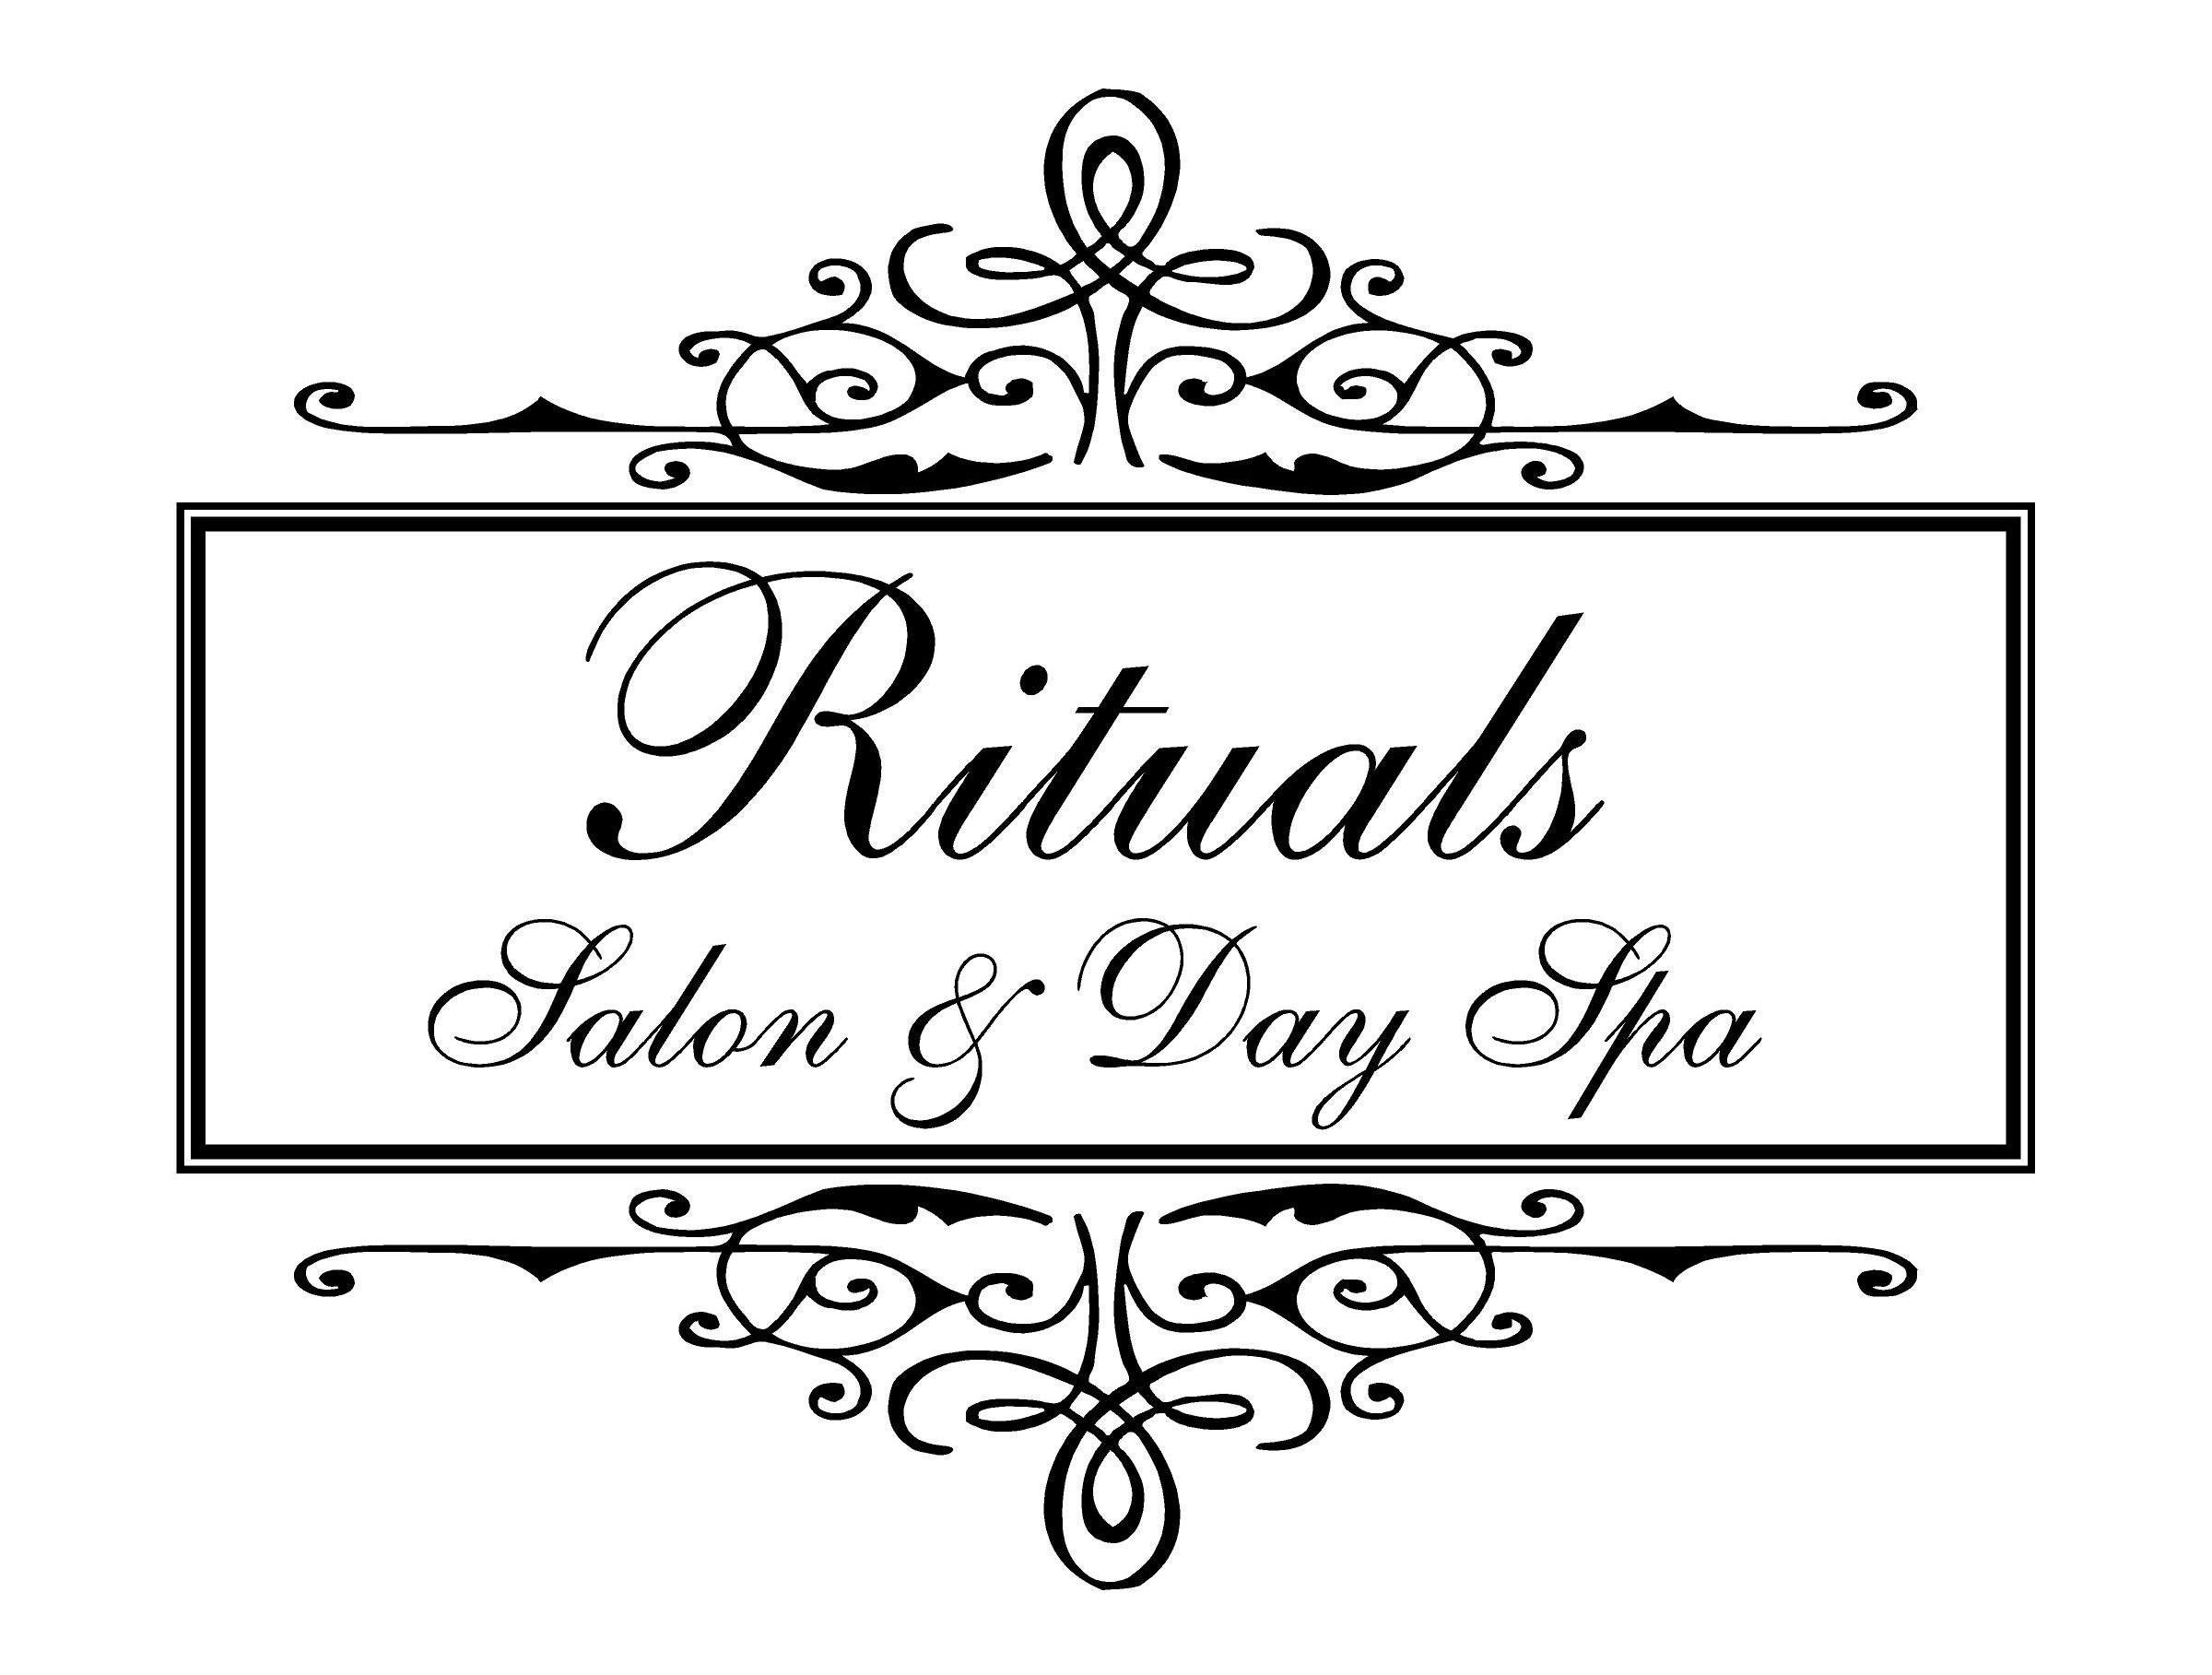 Rituals Salon and Day Spa